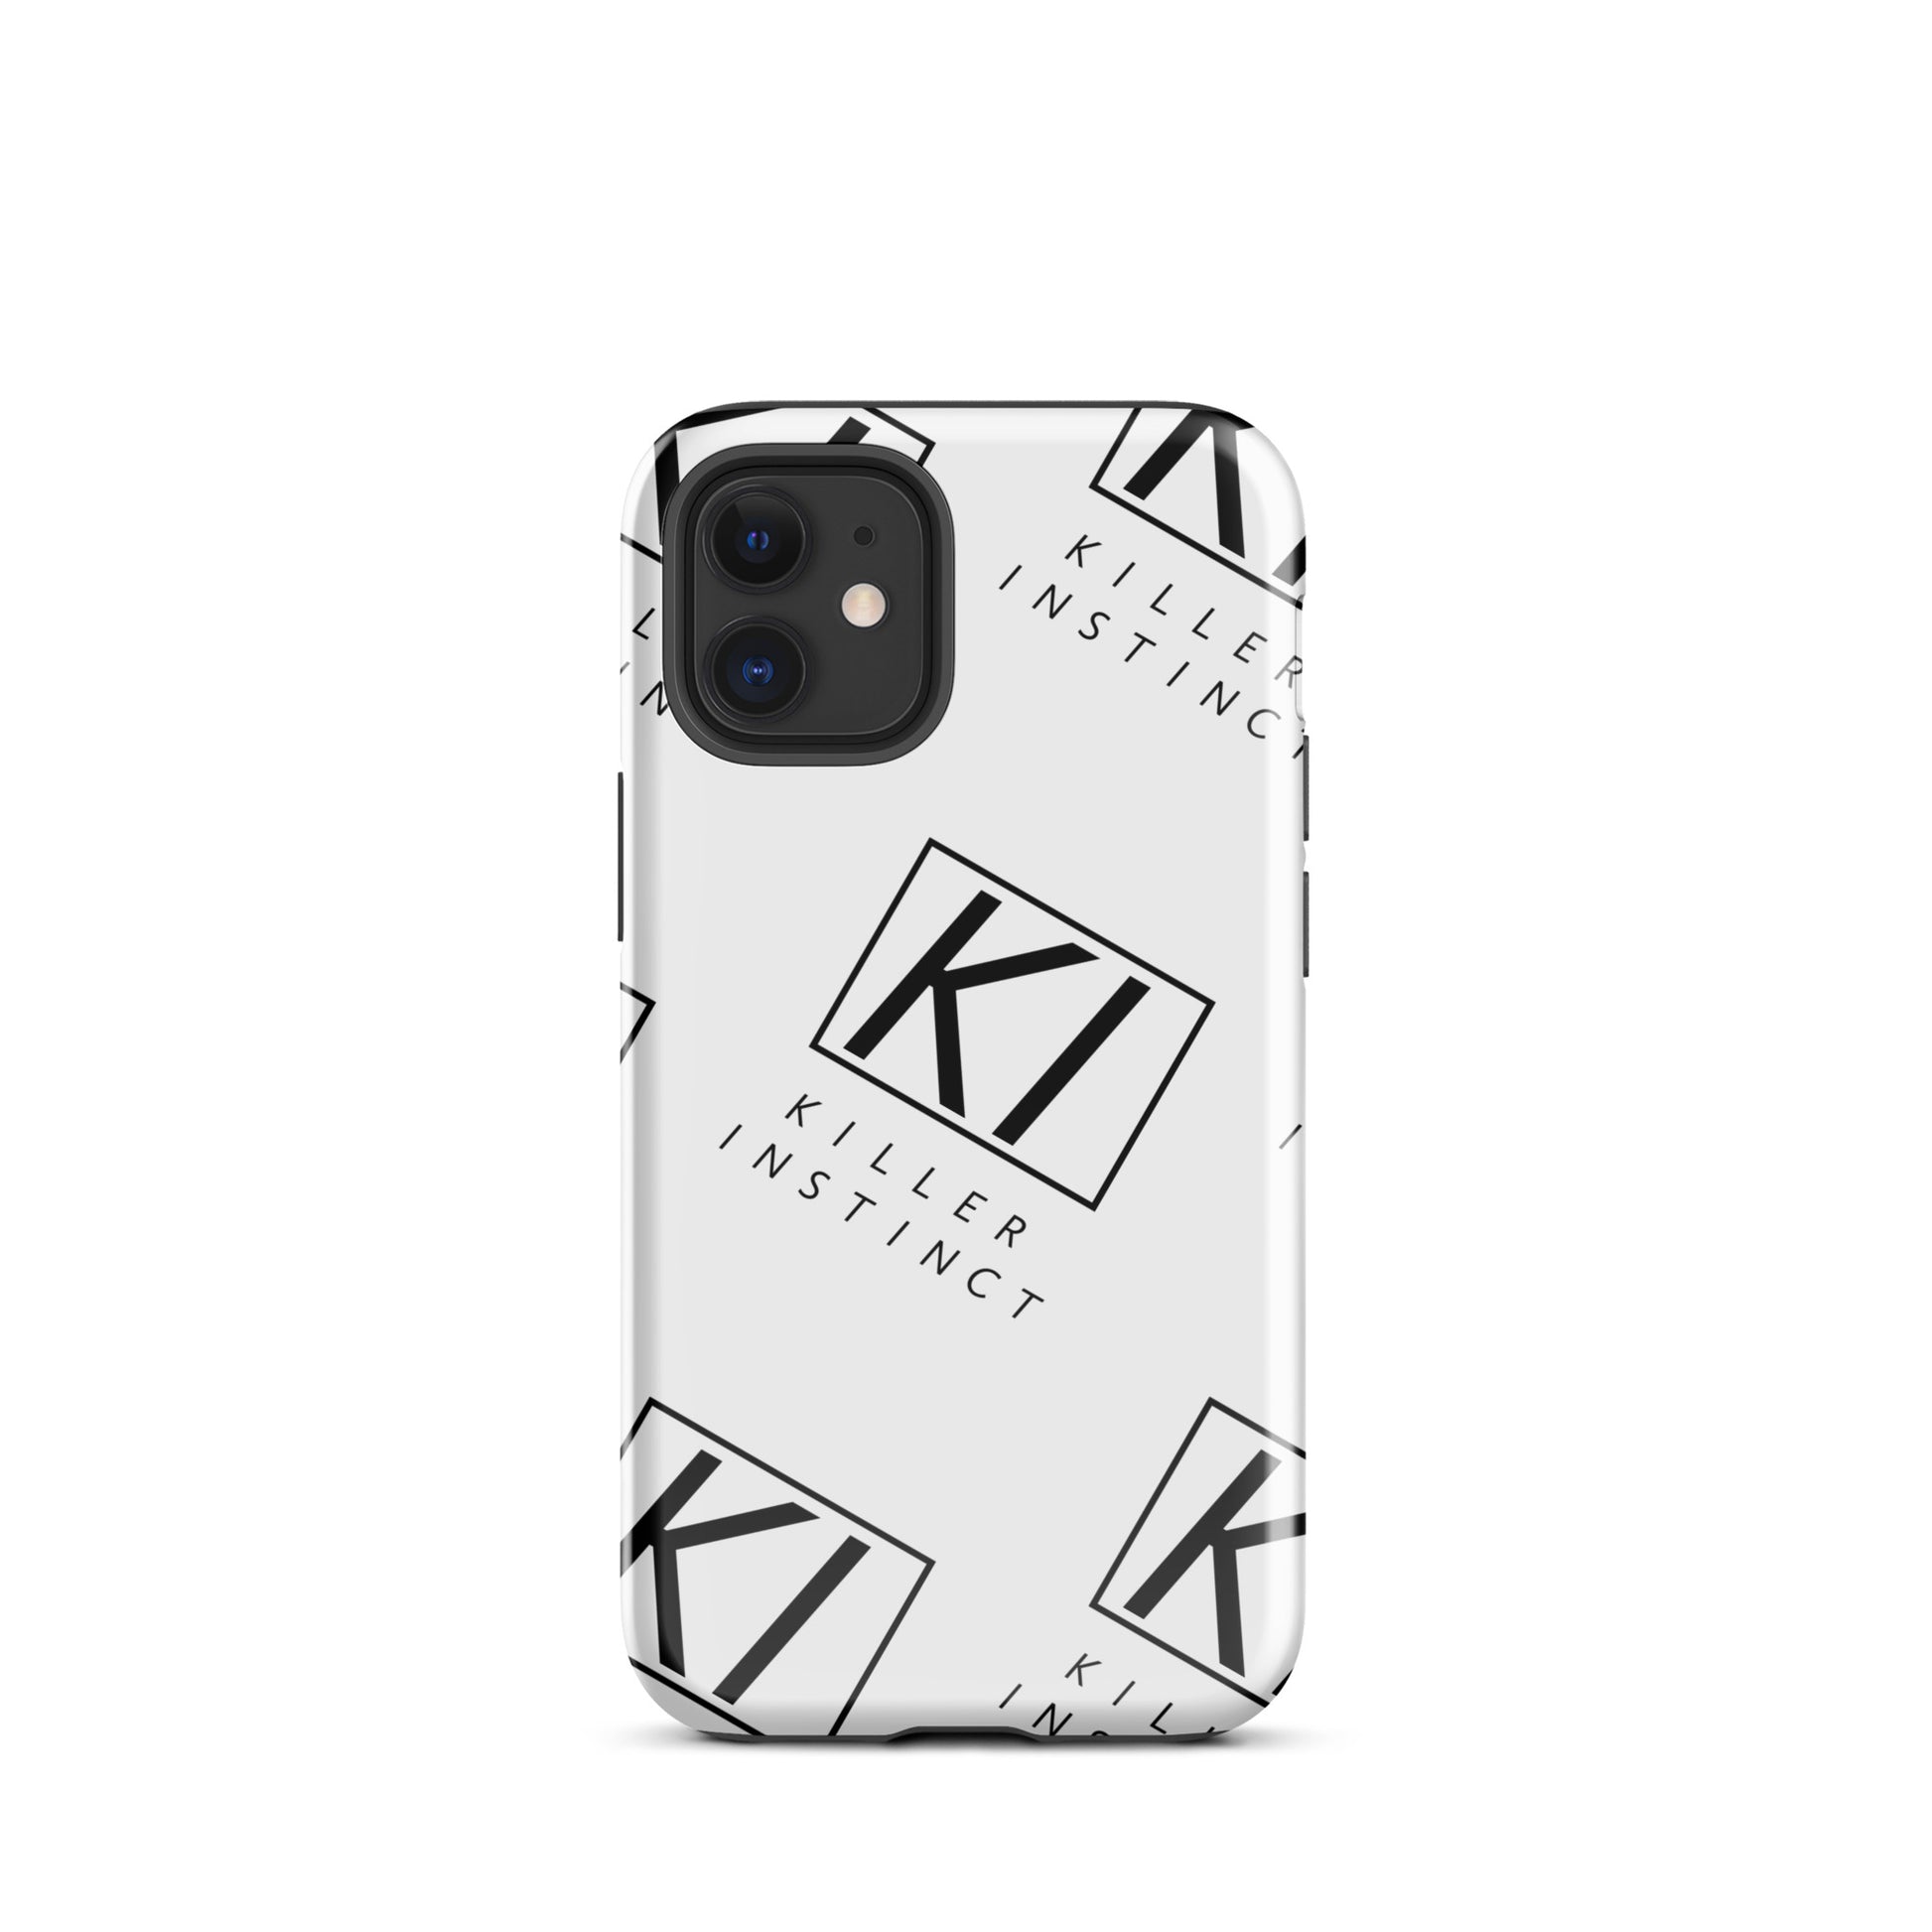 Killer Protection Phone Case - Killer Instinct LLC